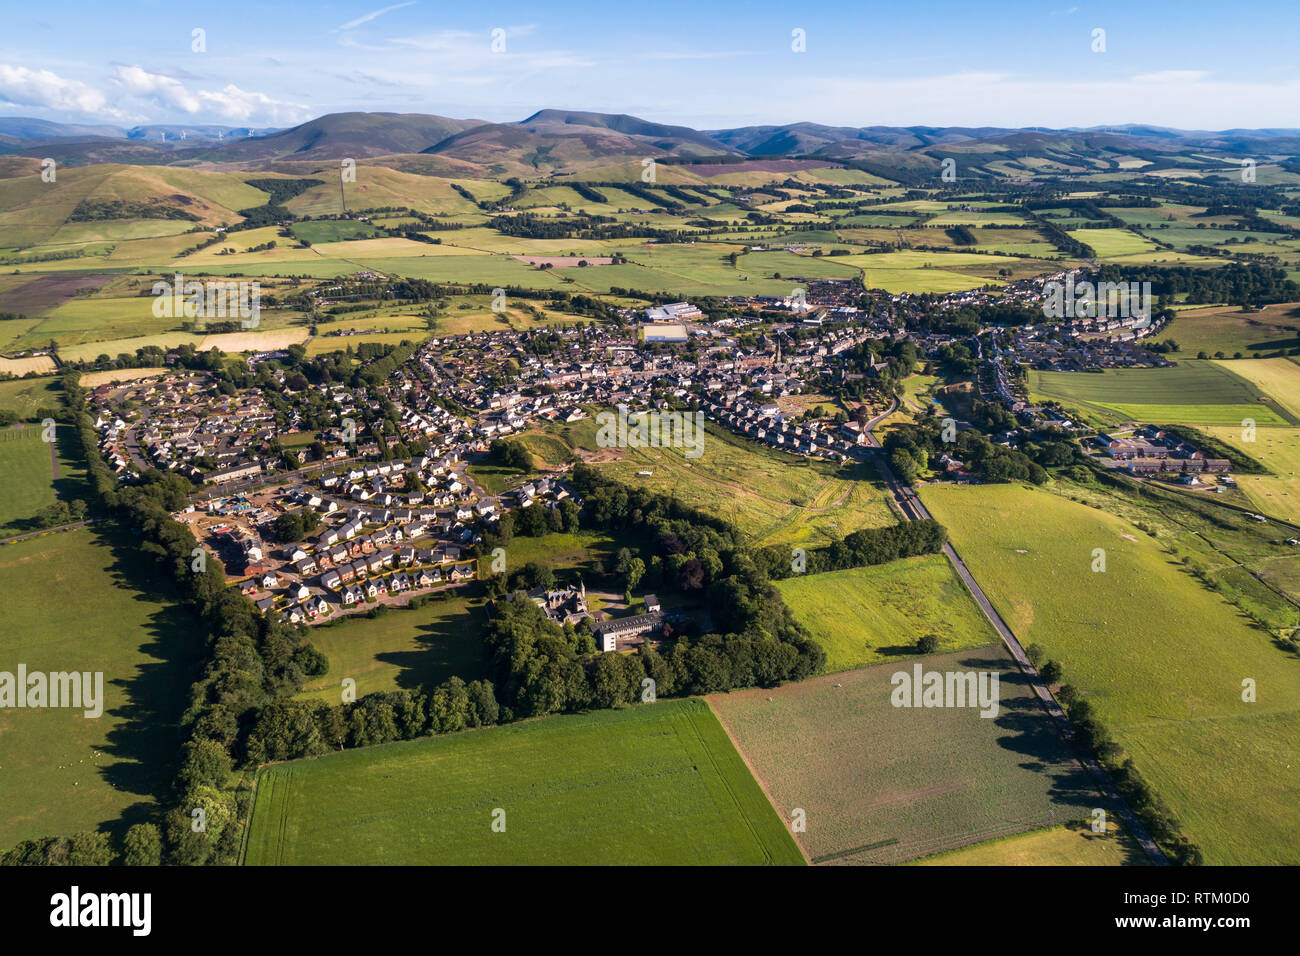 Imagen aérea de la ciudad de Biggar en South Lanarkshire mostrando la parte superior del Valle Clyde y las colinas de la región de Scottish Borders, tomada en la tarde de sol. Foto de stock